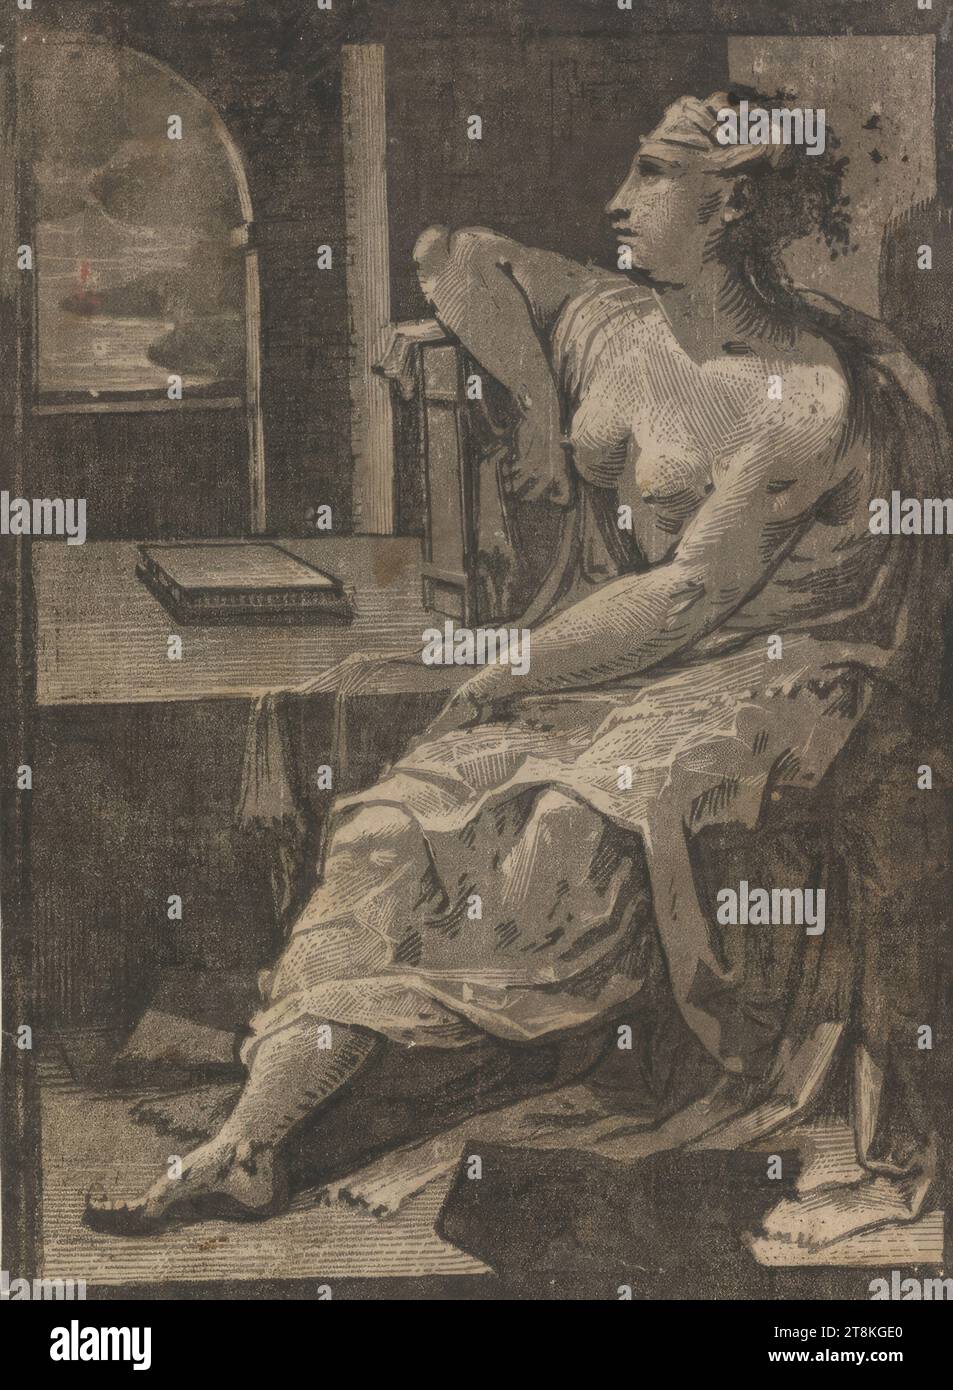 La Méditation, Domenico Beccafumi a appelé. Mecarino, Cortine in Valdibiana Montaperti près de Sienne 1484 - 1551 Sienne, vers 1547-1551, impression, gravure sur bois clair-obscur en trois planches, gris, feuille : 21,2 x 15,5 cm Banque D'Images